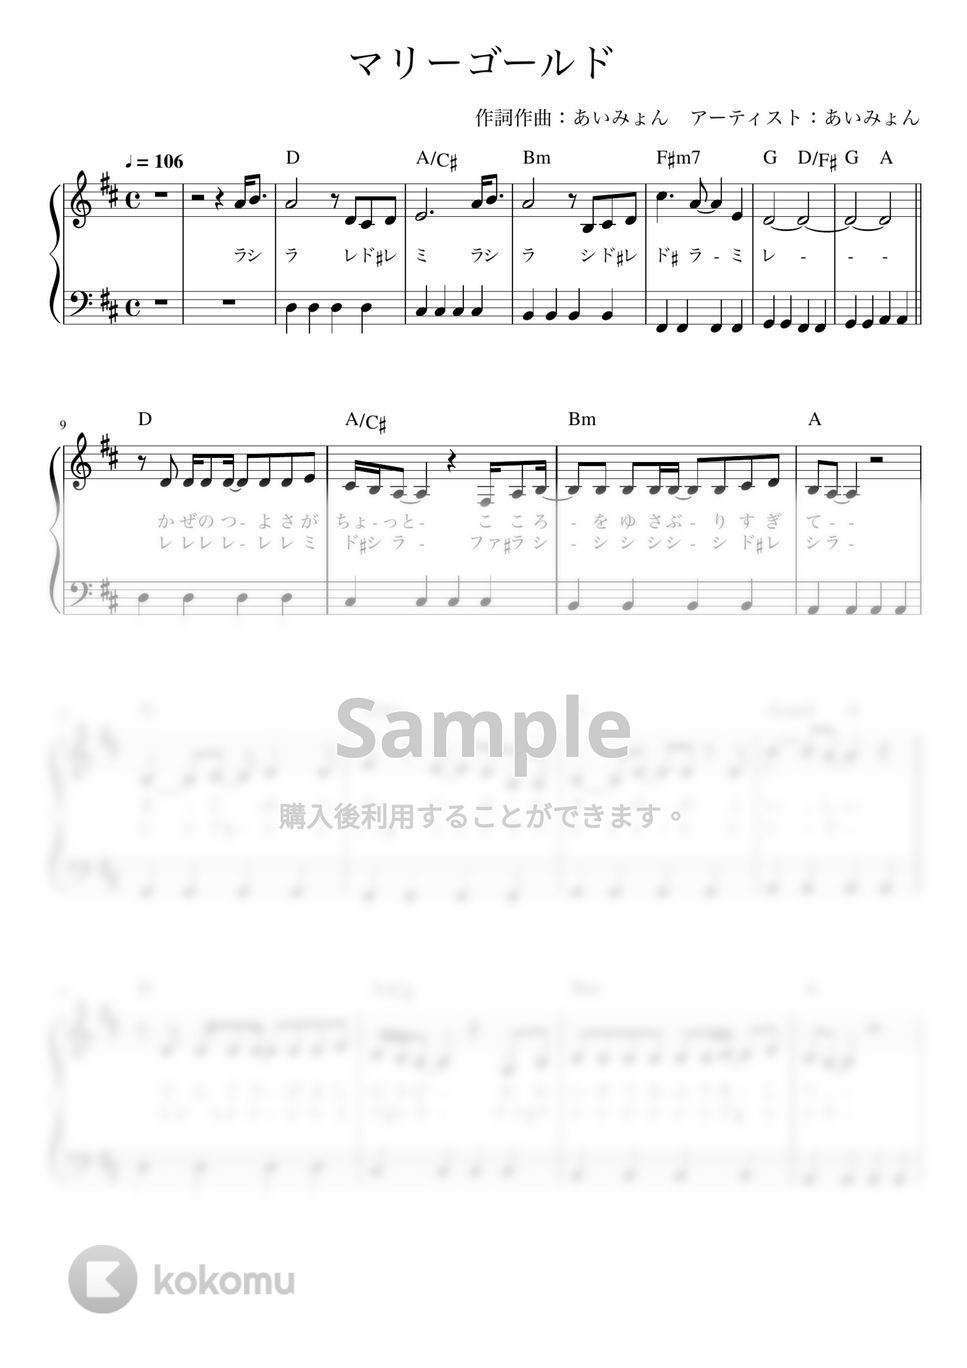 あいみょん - マリーゴールド (かんたん 歌詞付き ドレミ付き 初心者) by piano.tokyo